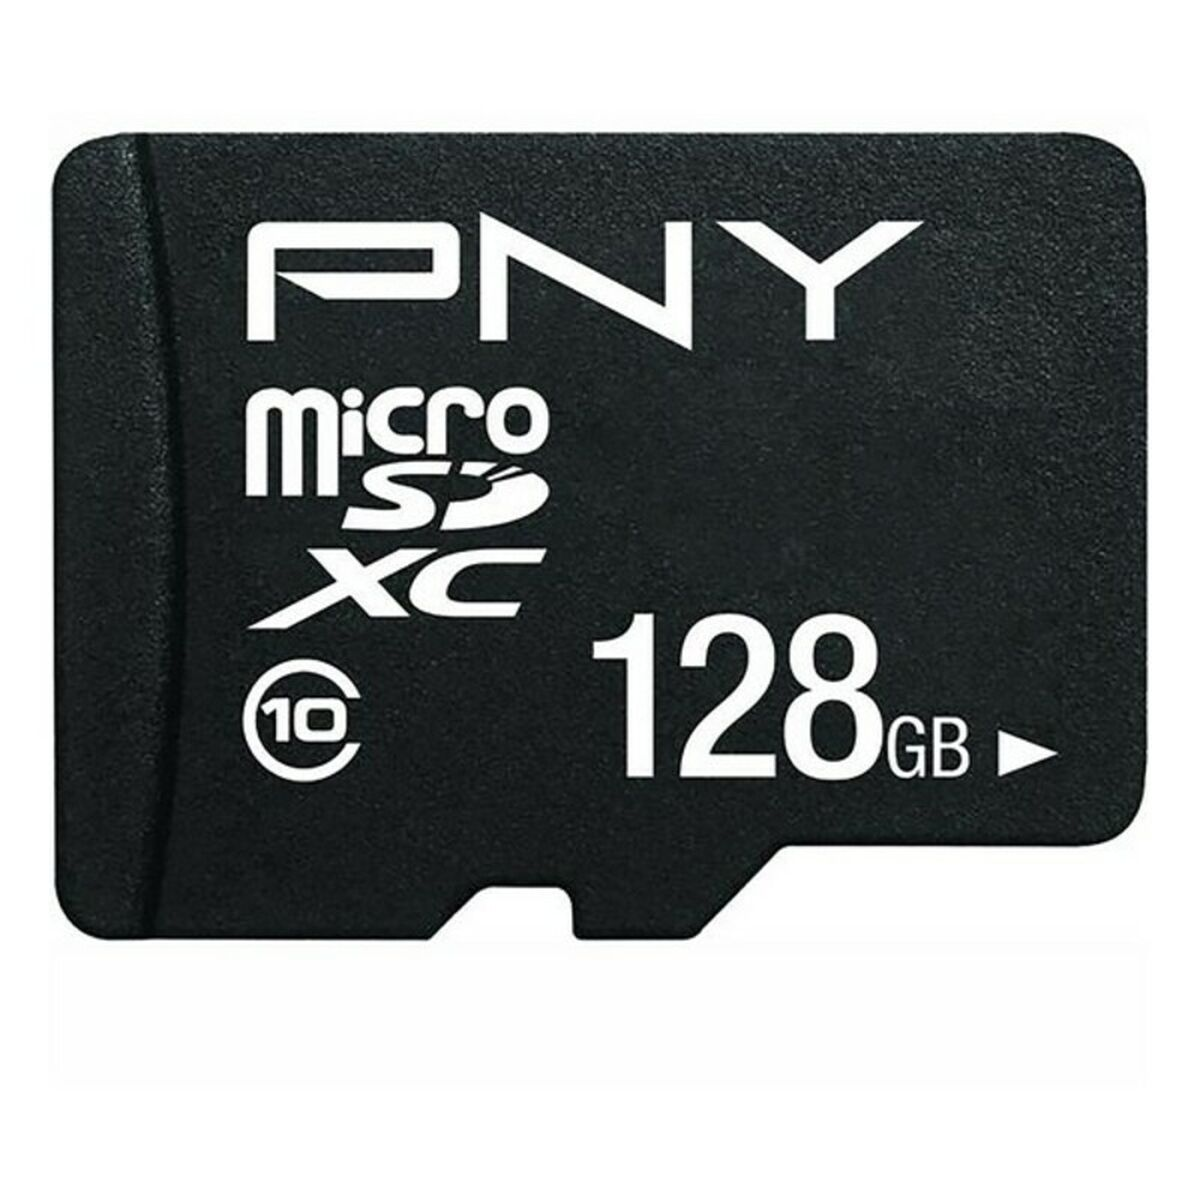 GB Micro-SD PNY 64 m0000CTU34, Speicherkarte,